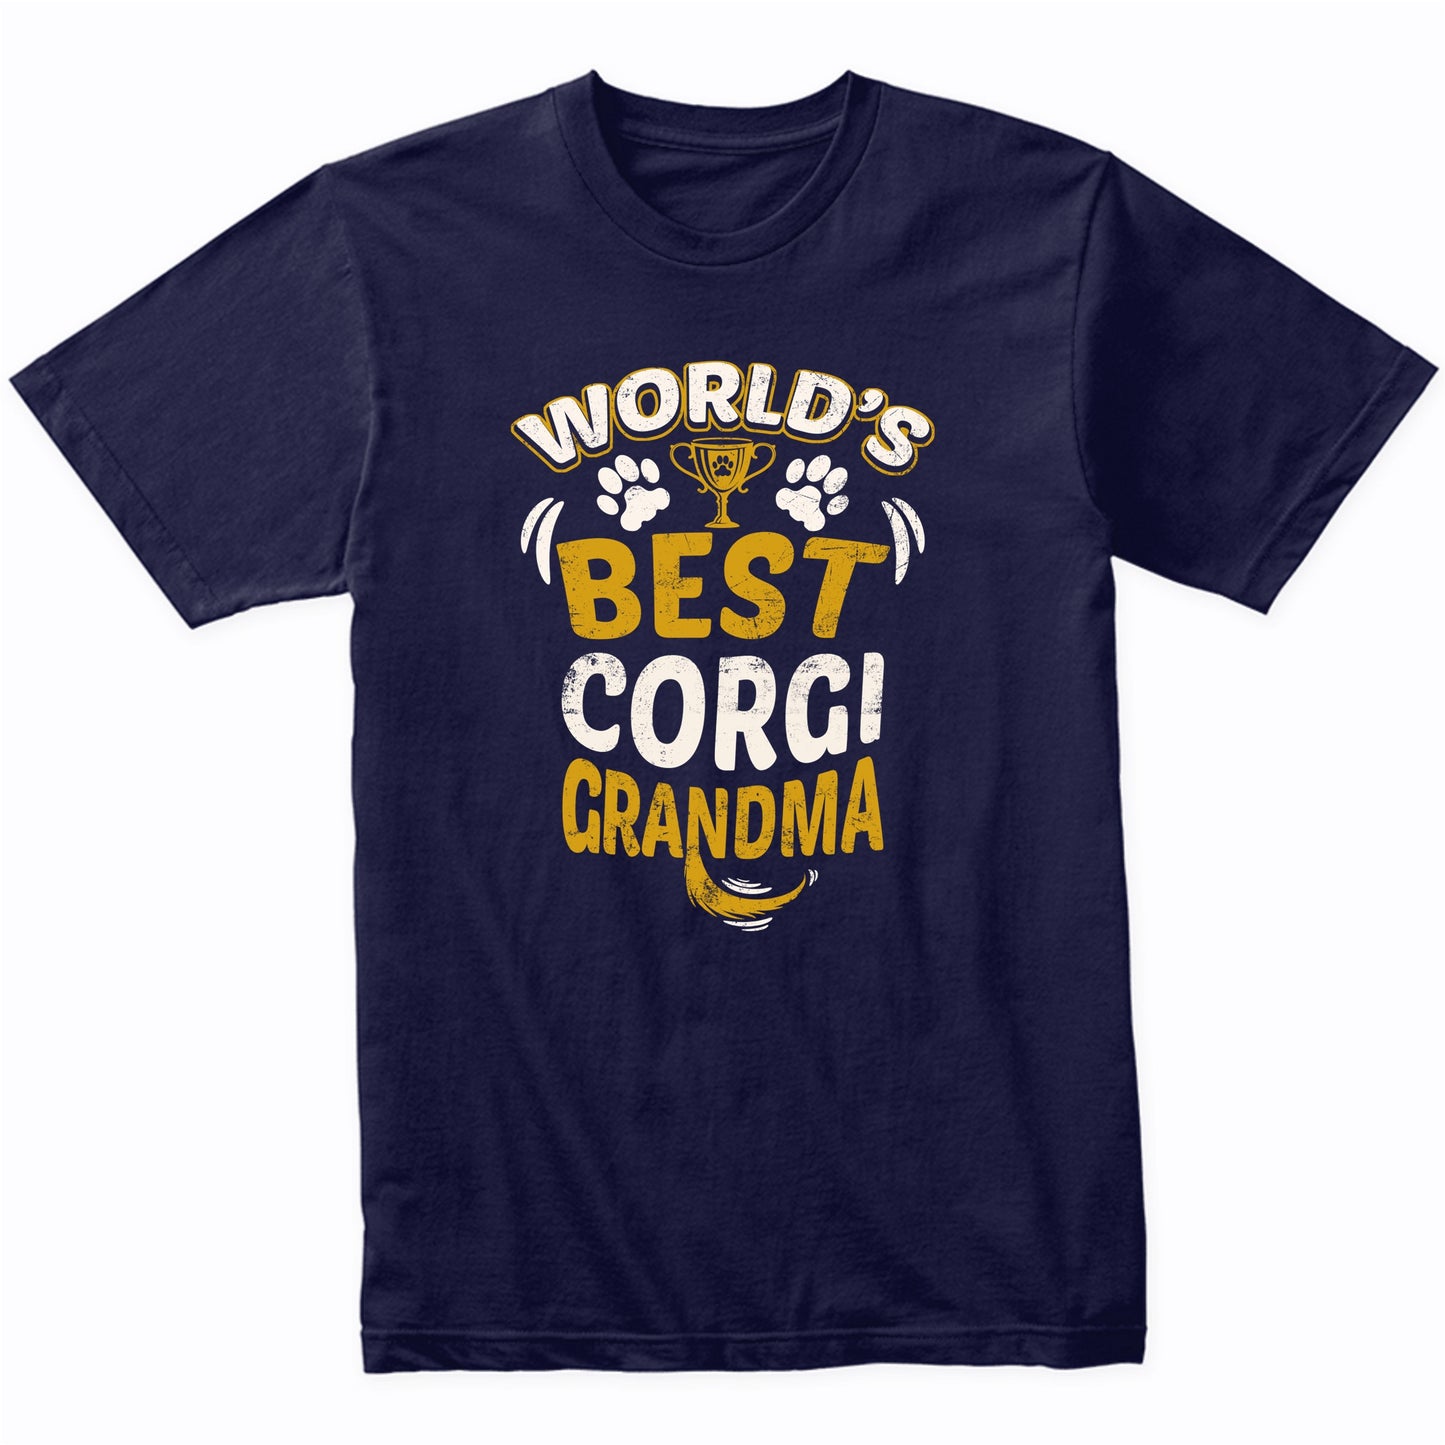 World's Best Corgi Grandma Graphic T-Shirt